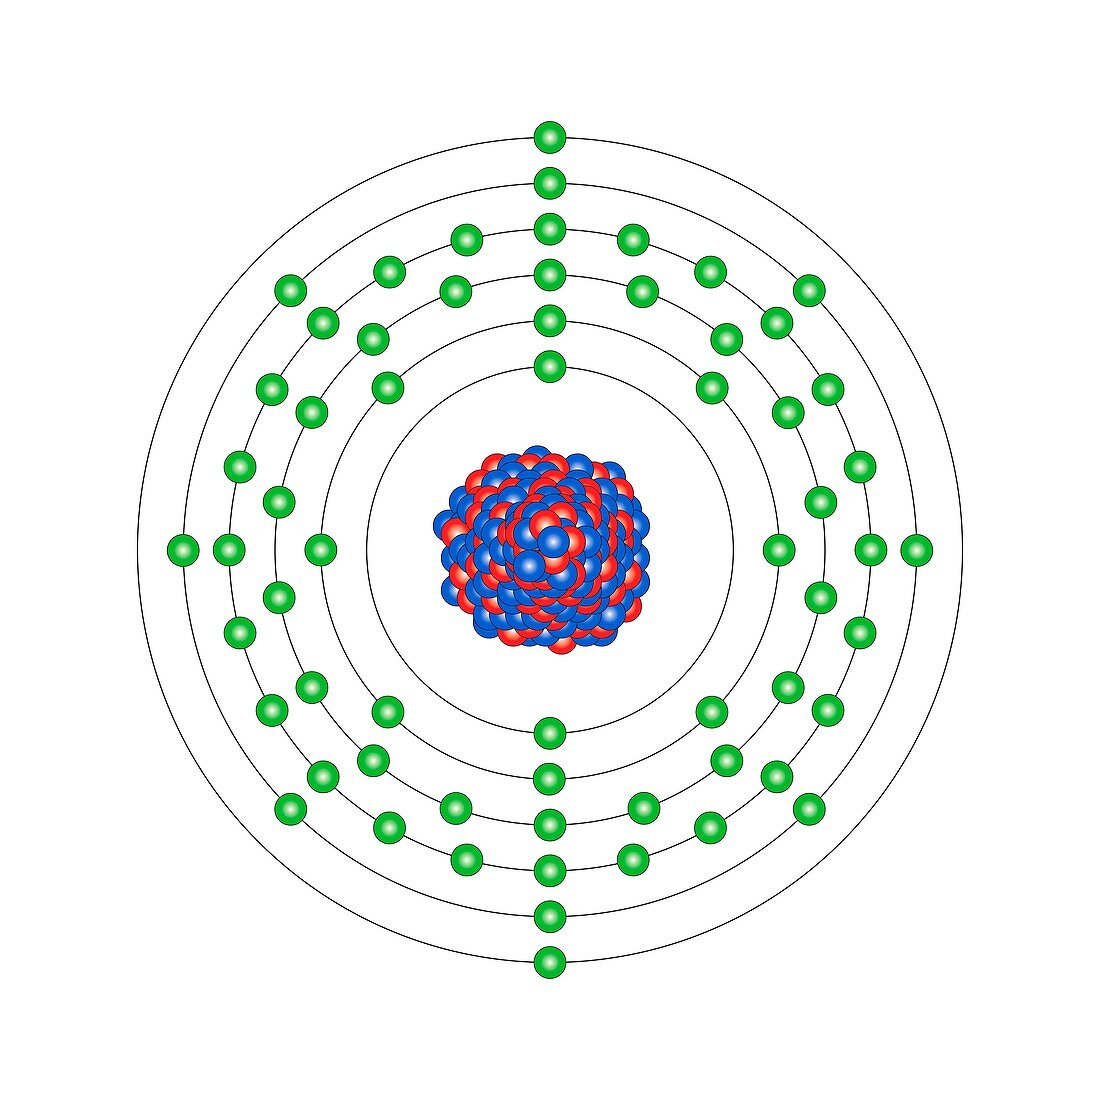 Samarium,atomic structure